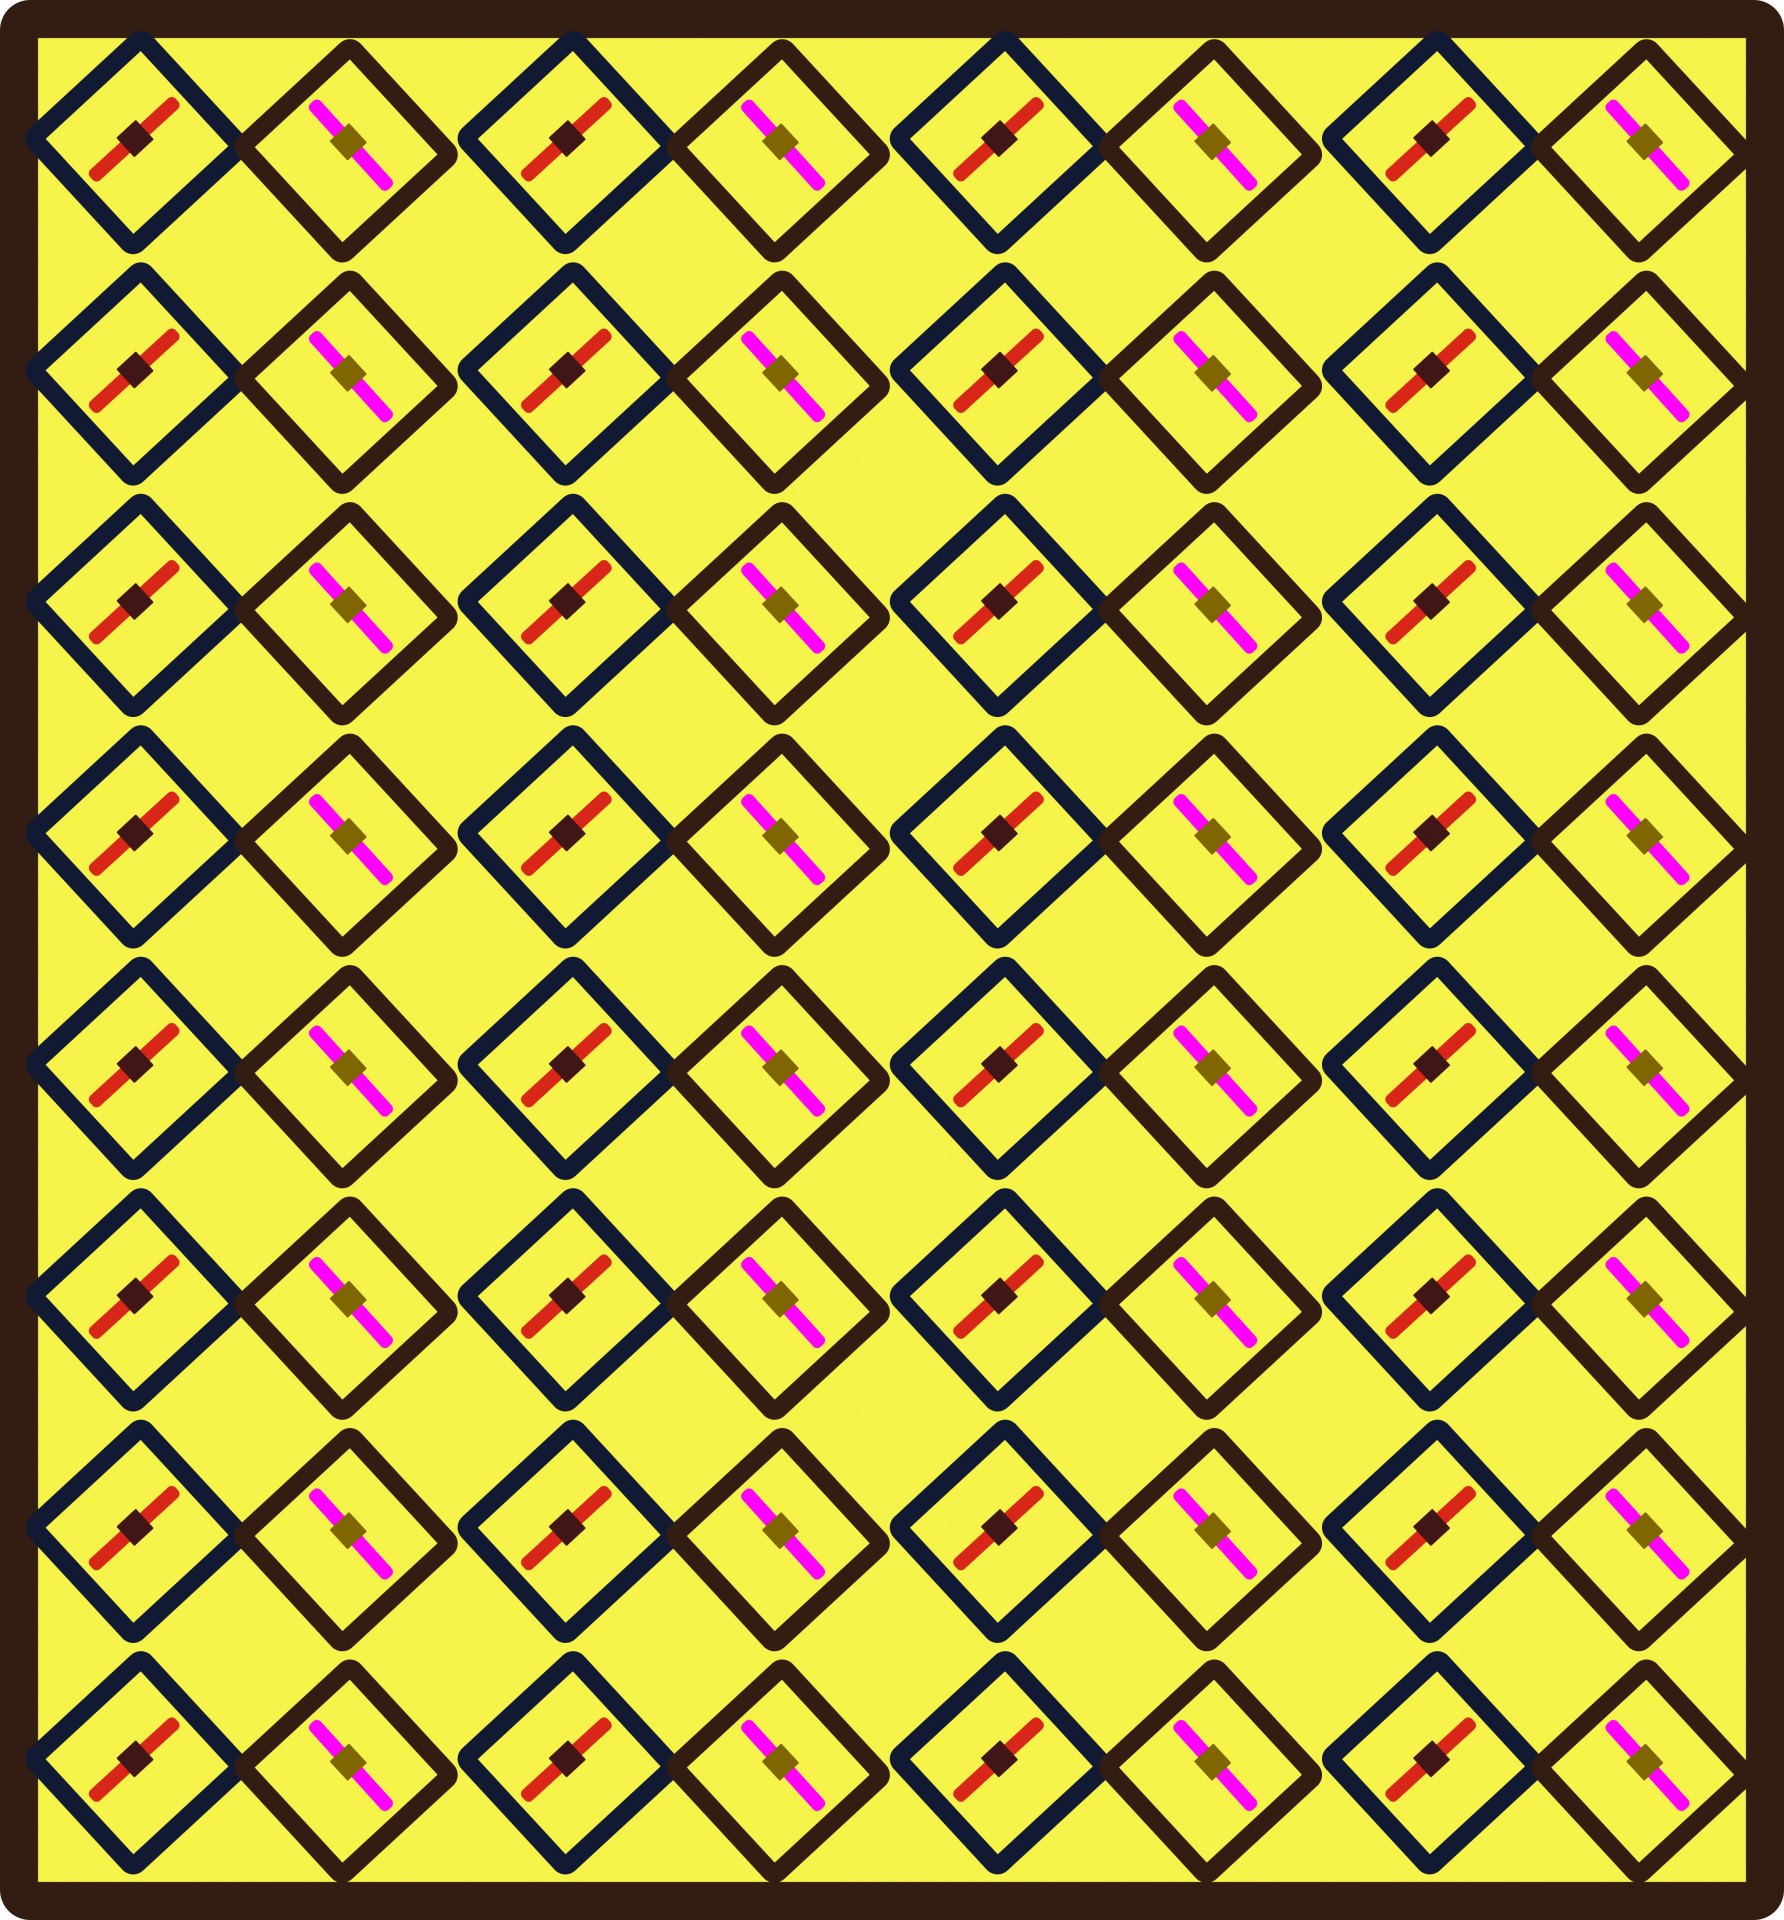 Cuadrados amarillos repiten el patrón de